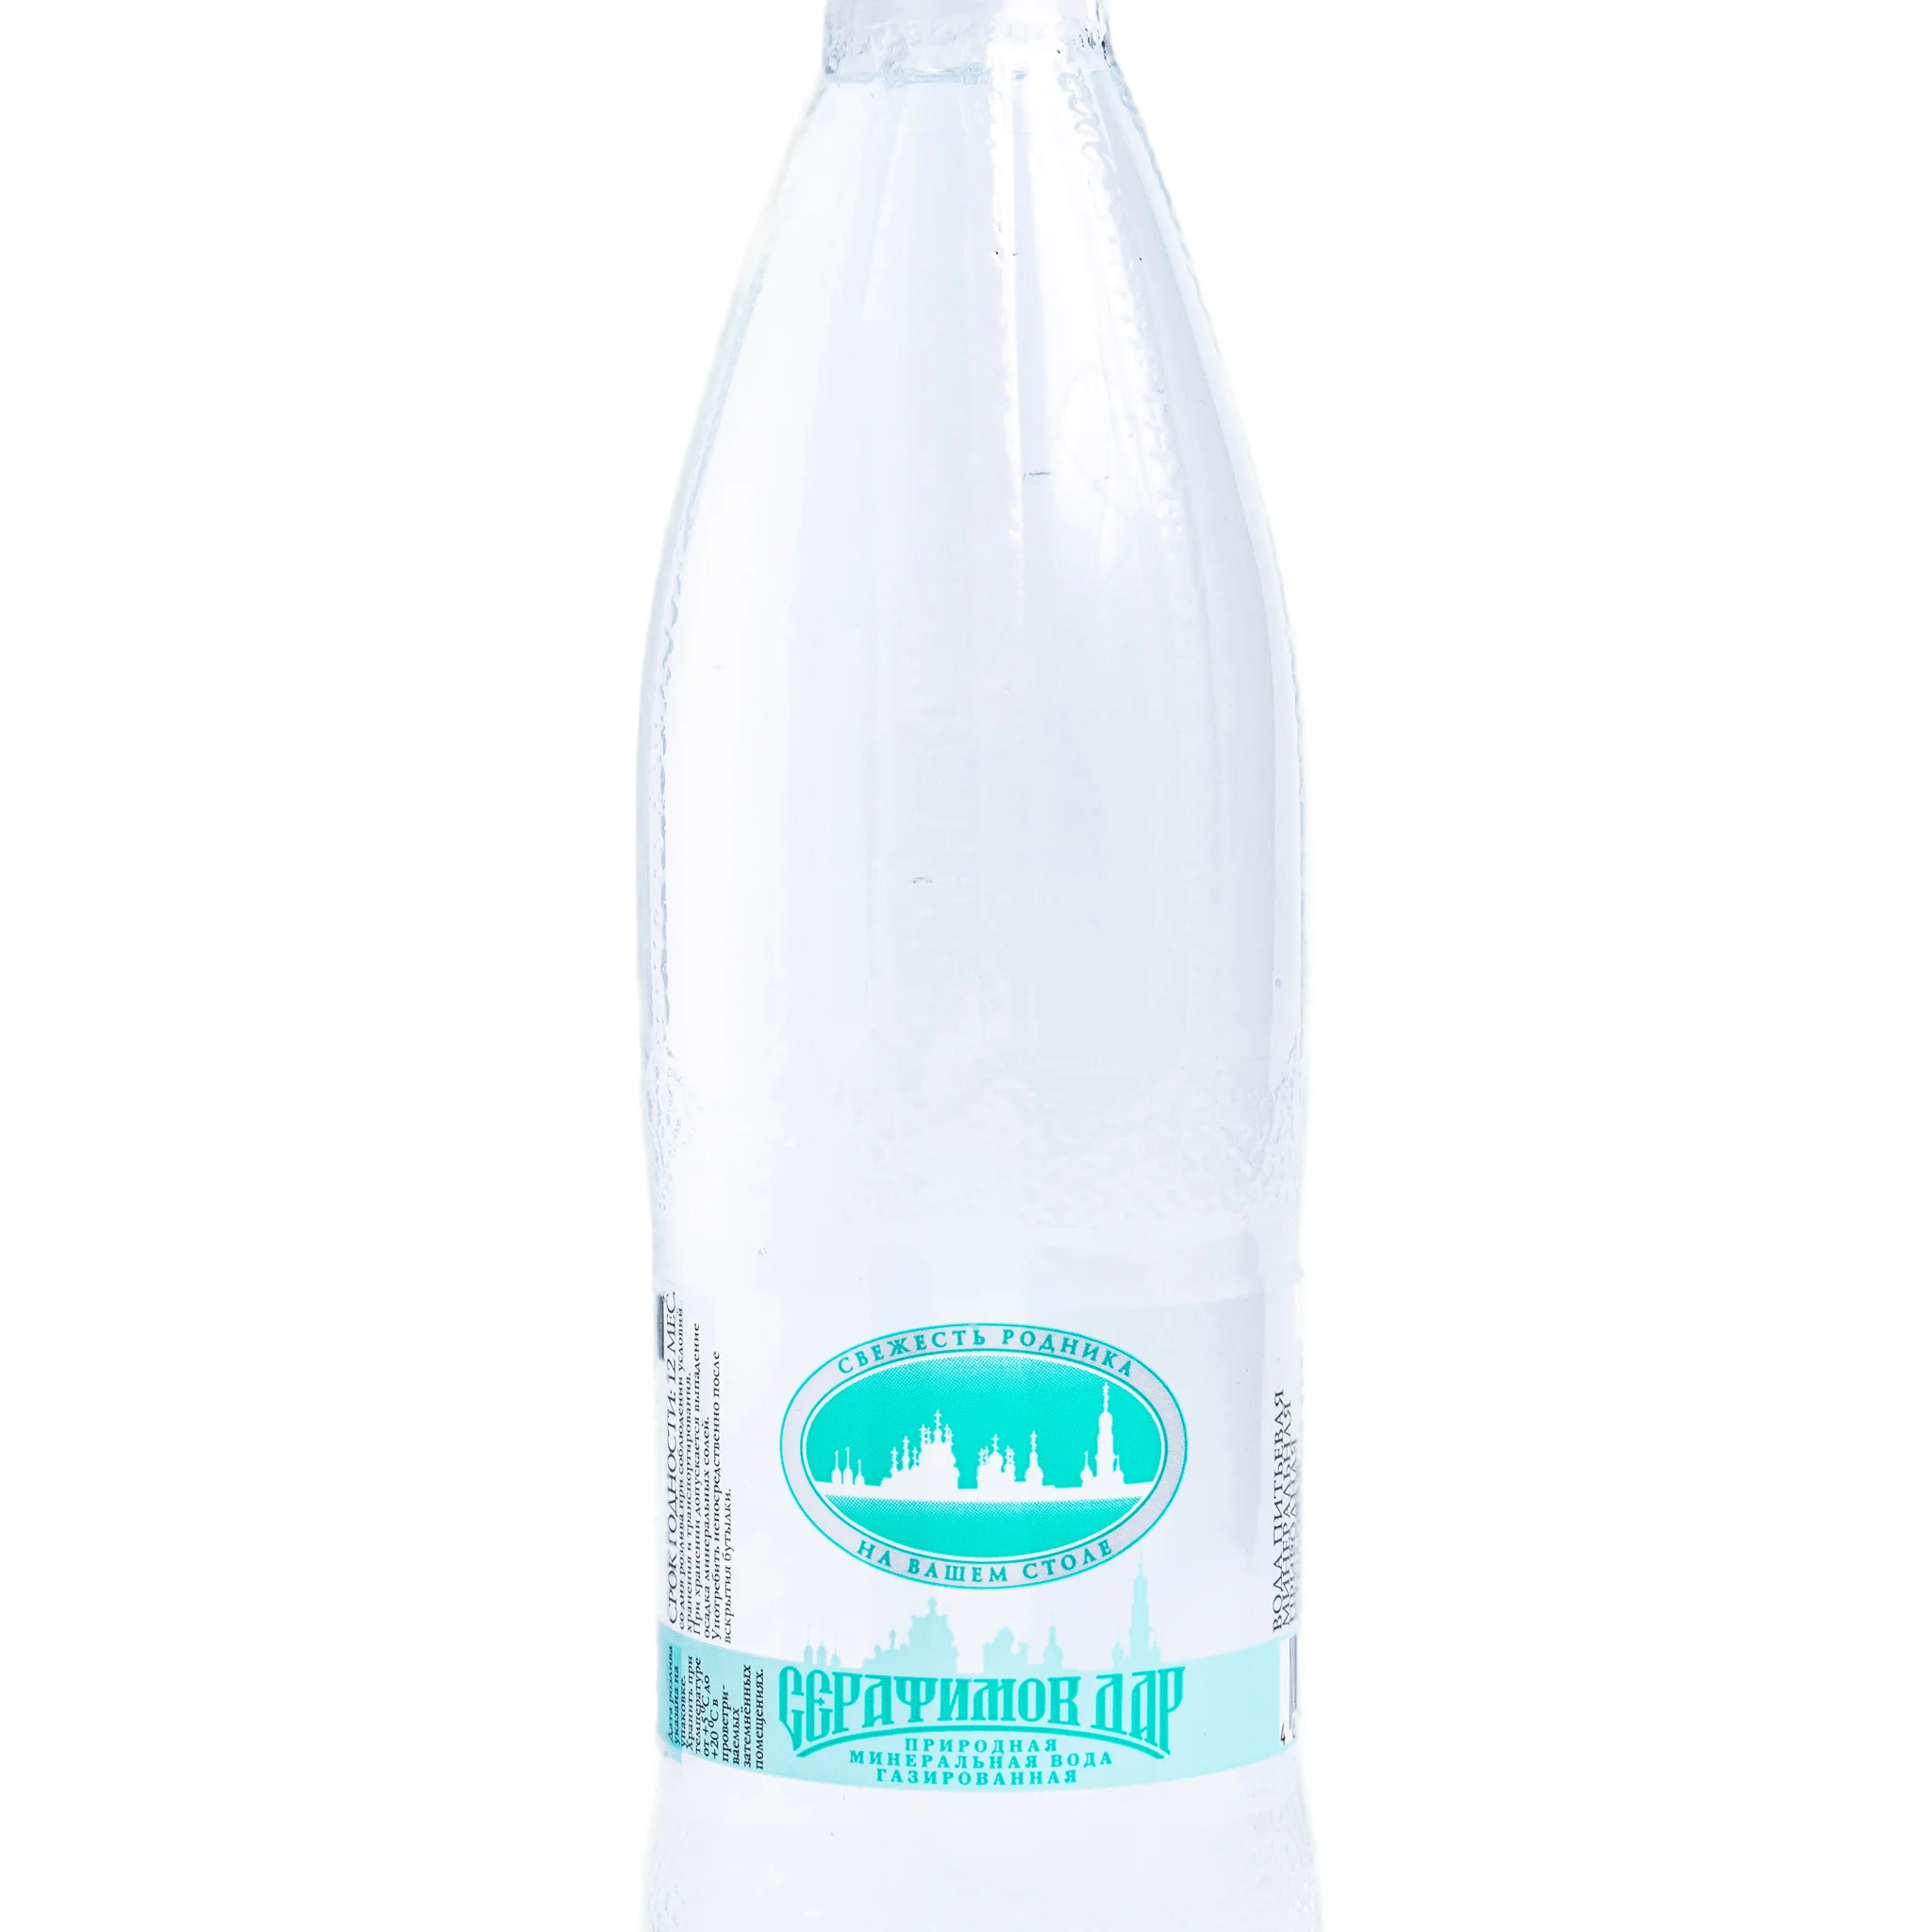 Mineral drinking water "Serafimov Dar", 0.5l